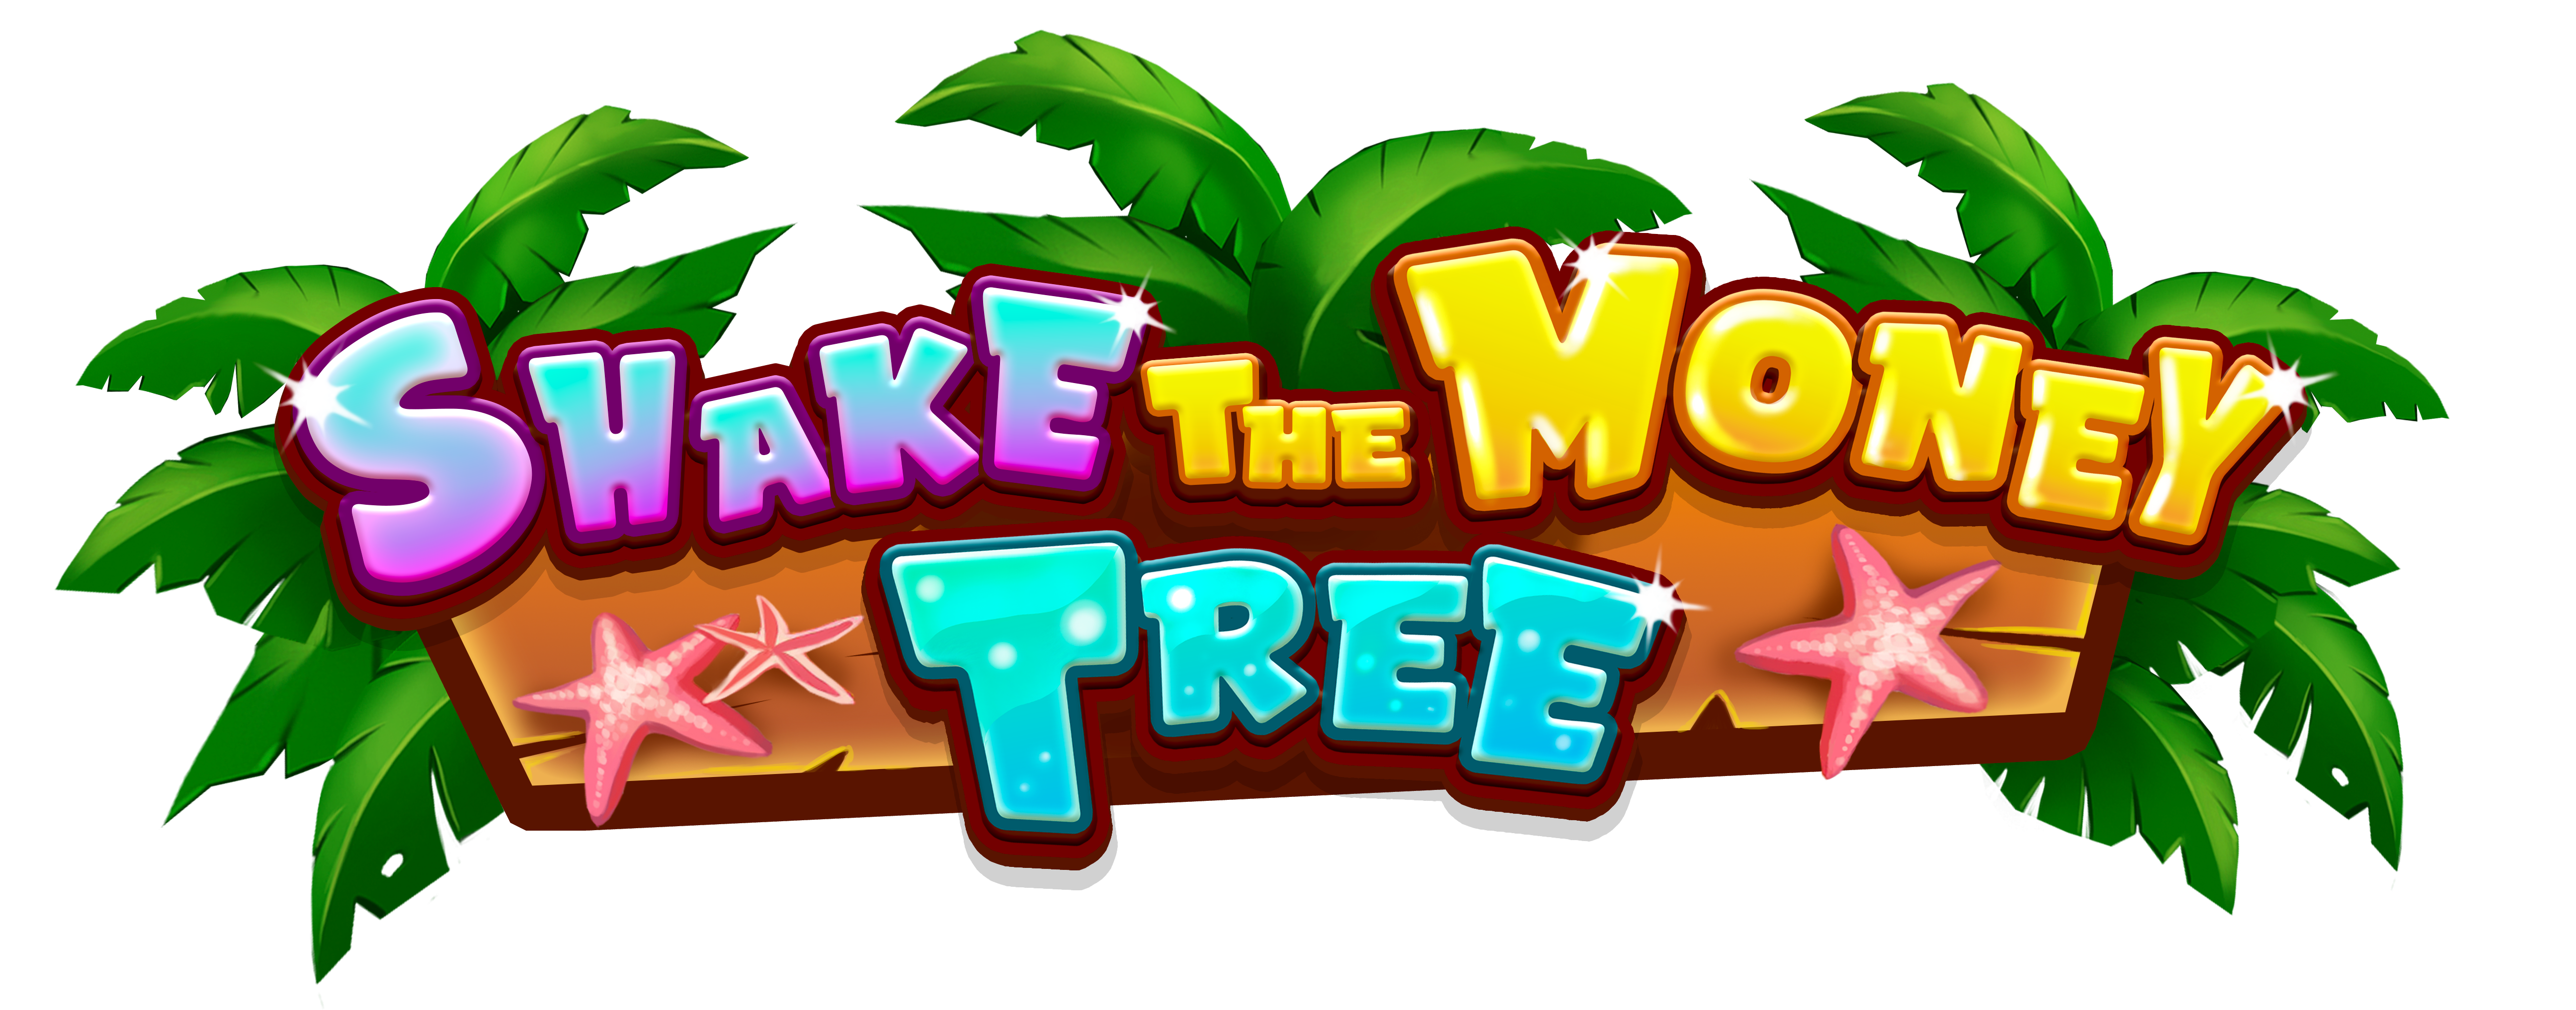 Shake the Money Tree | S Gaming